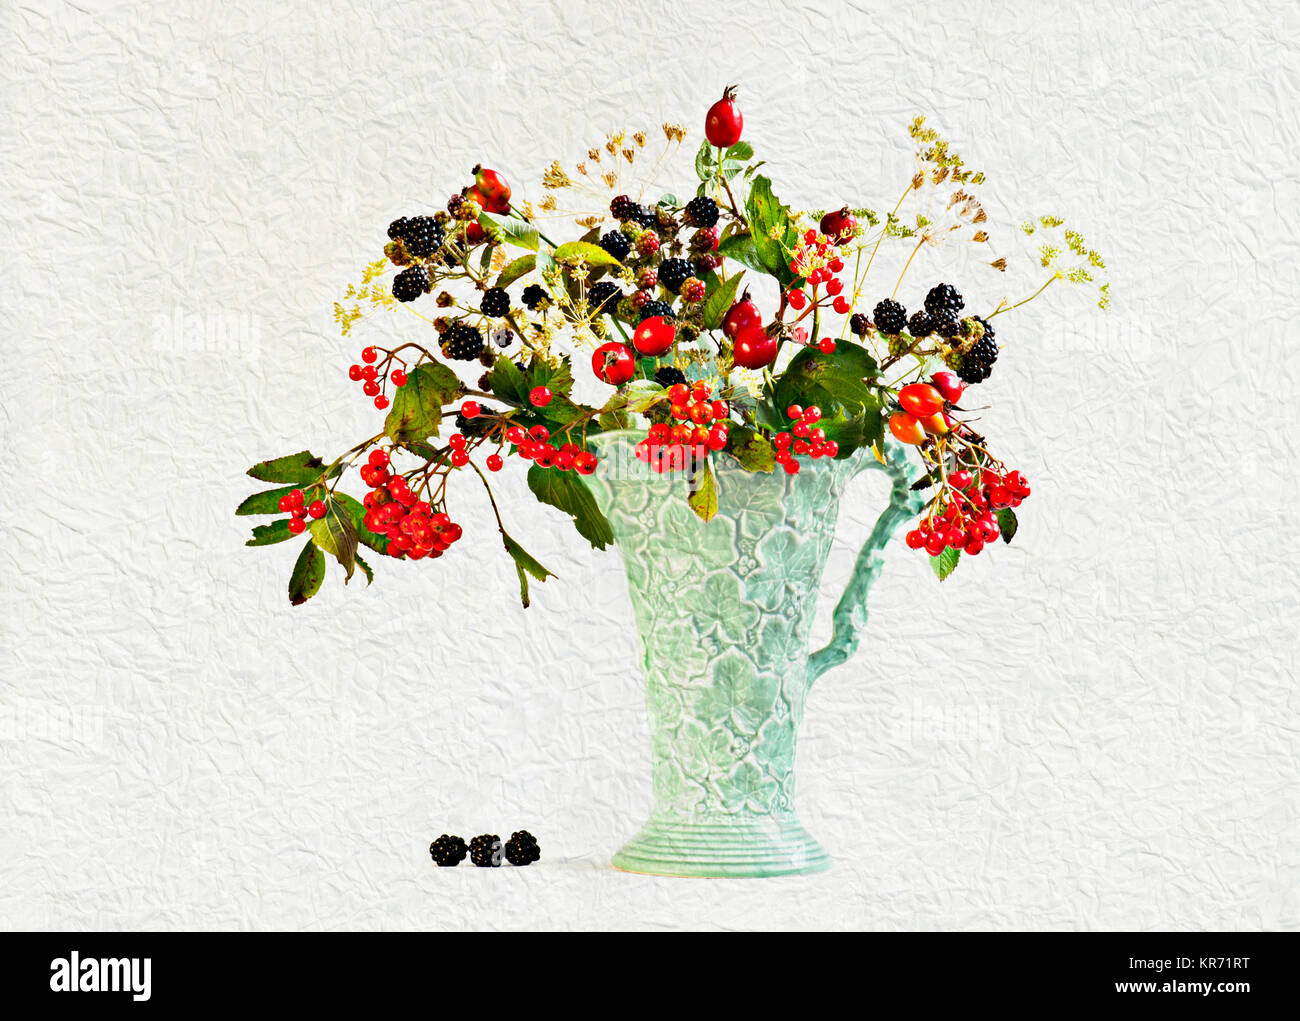 Blackberry, Rubus cultivar Rowan, Sorbus e Rosa canina Rosa canina in caraffa vaso. Artistico strati testurizzata aggiunto a immagine per produrre un effetto pittorica. Foto Stock